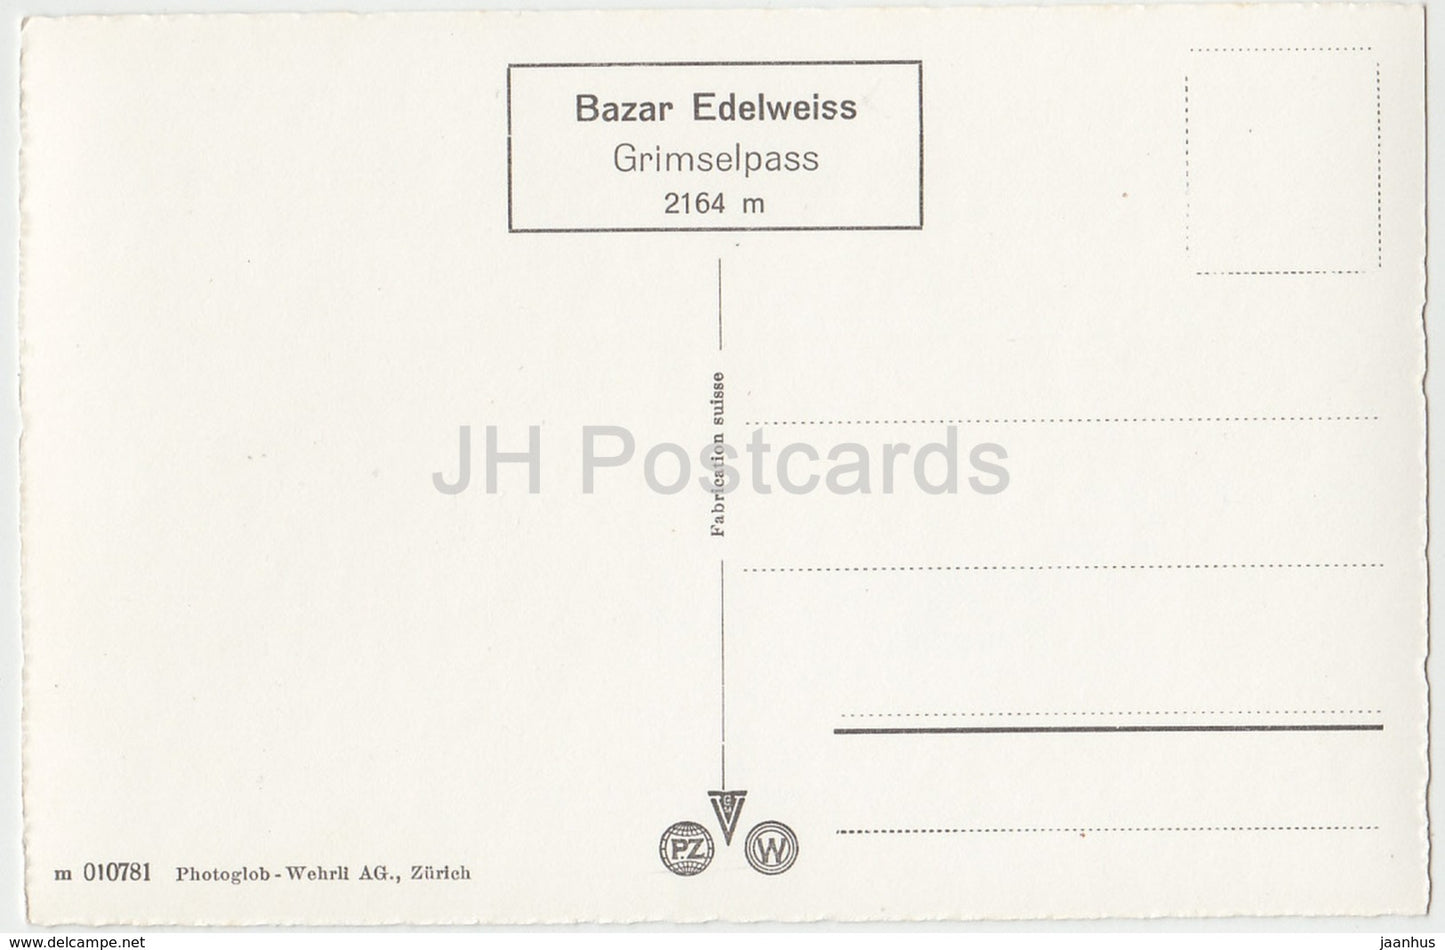 Grimsel - Passhöhe - altes Auto - Bazar Edelweiss - 010781 - Schweiz - alte Postkarte - unbenutzt